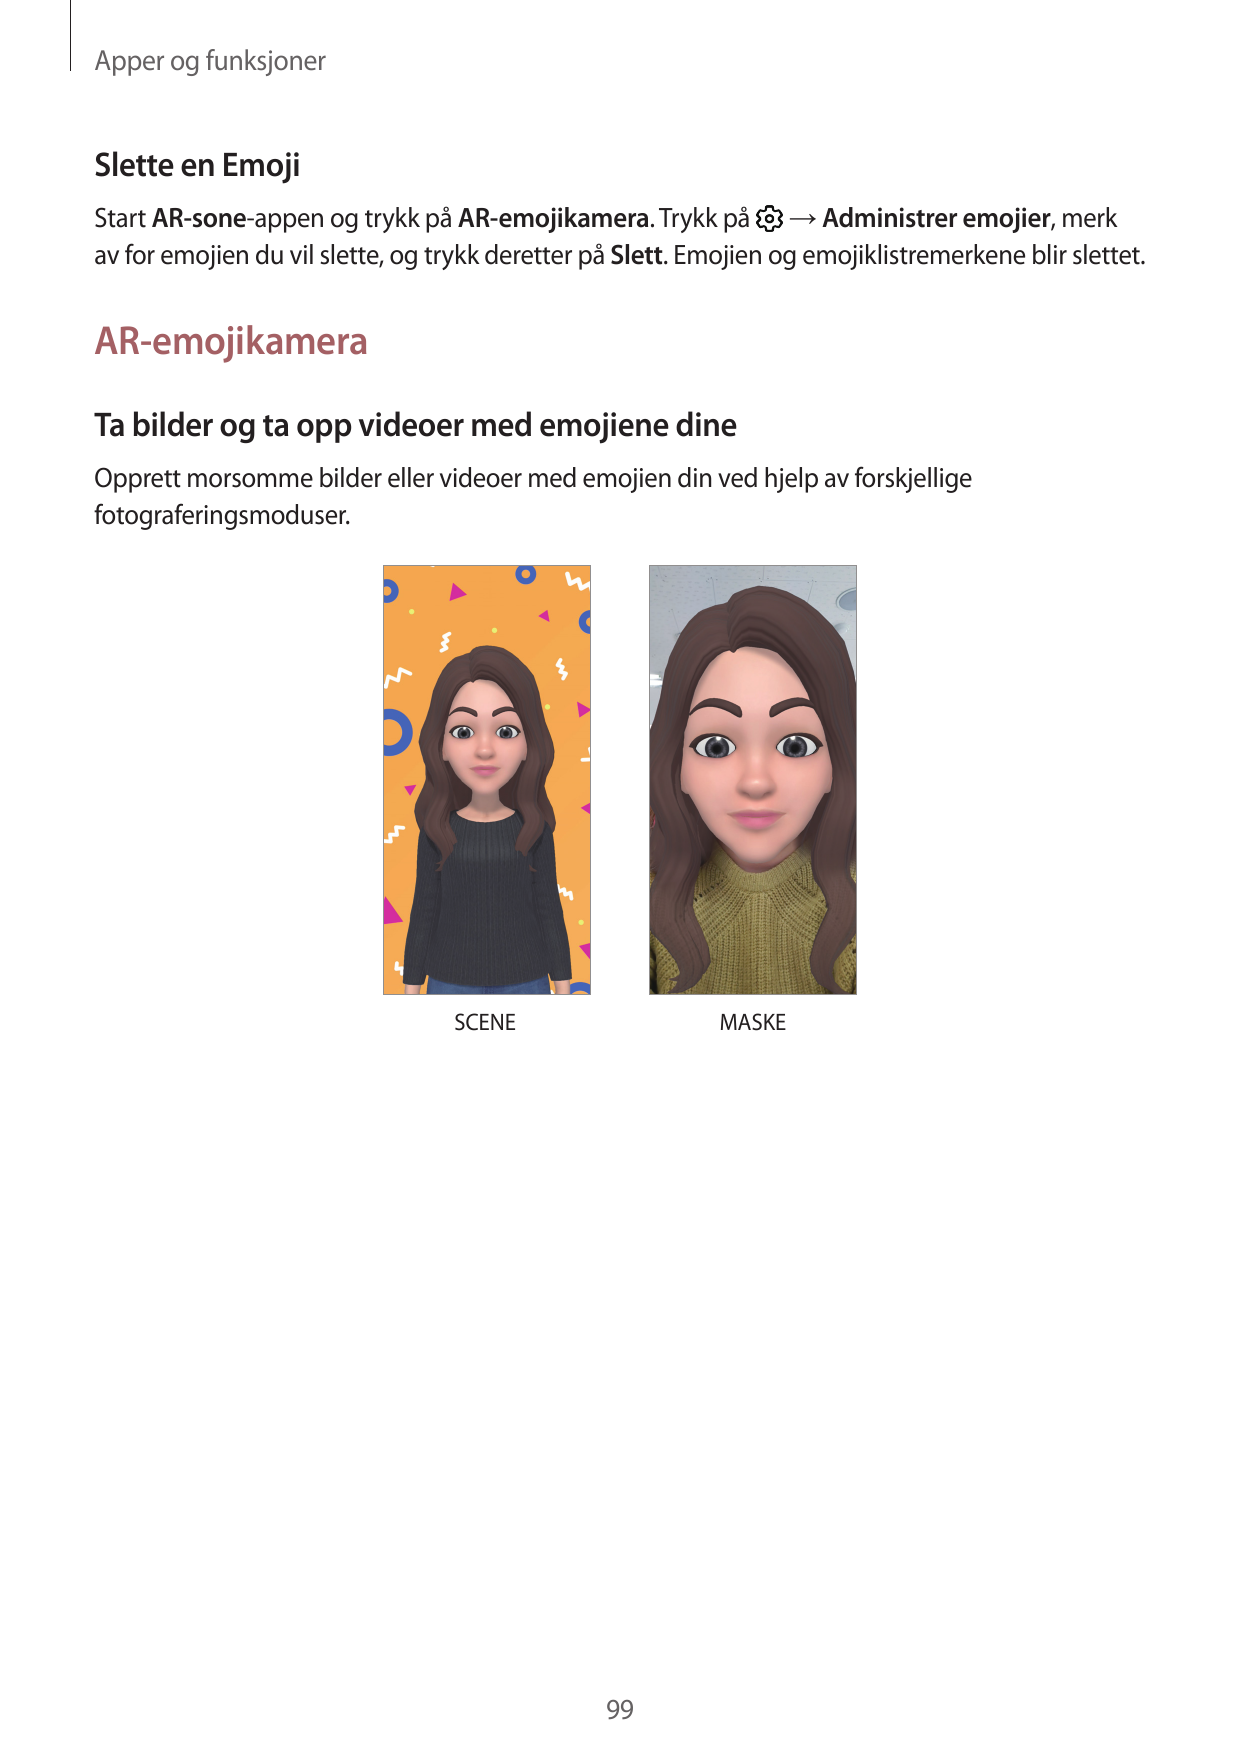 Apper og funksjonerSlette en EmojiStart AR-sone-appen og trykk på AR-emojikamera. Trykk på → Administrer emojier, merkav for emo